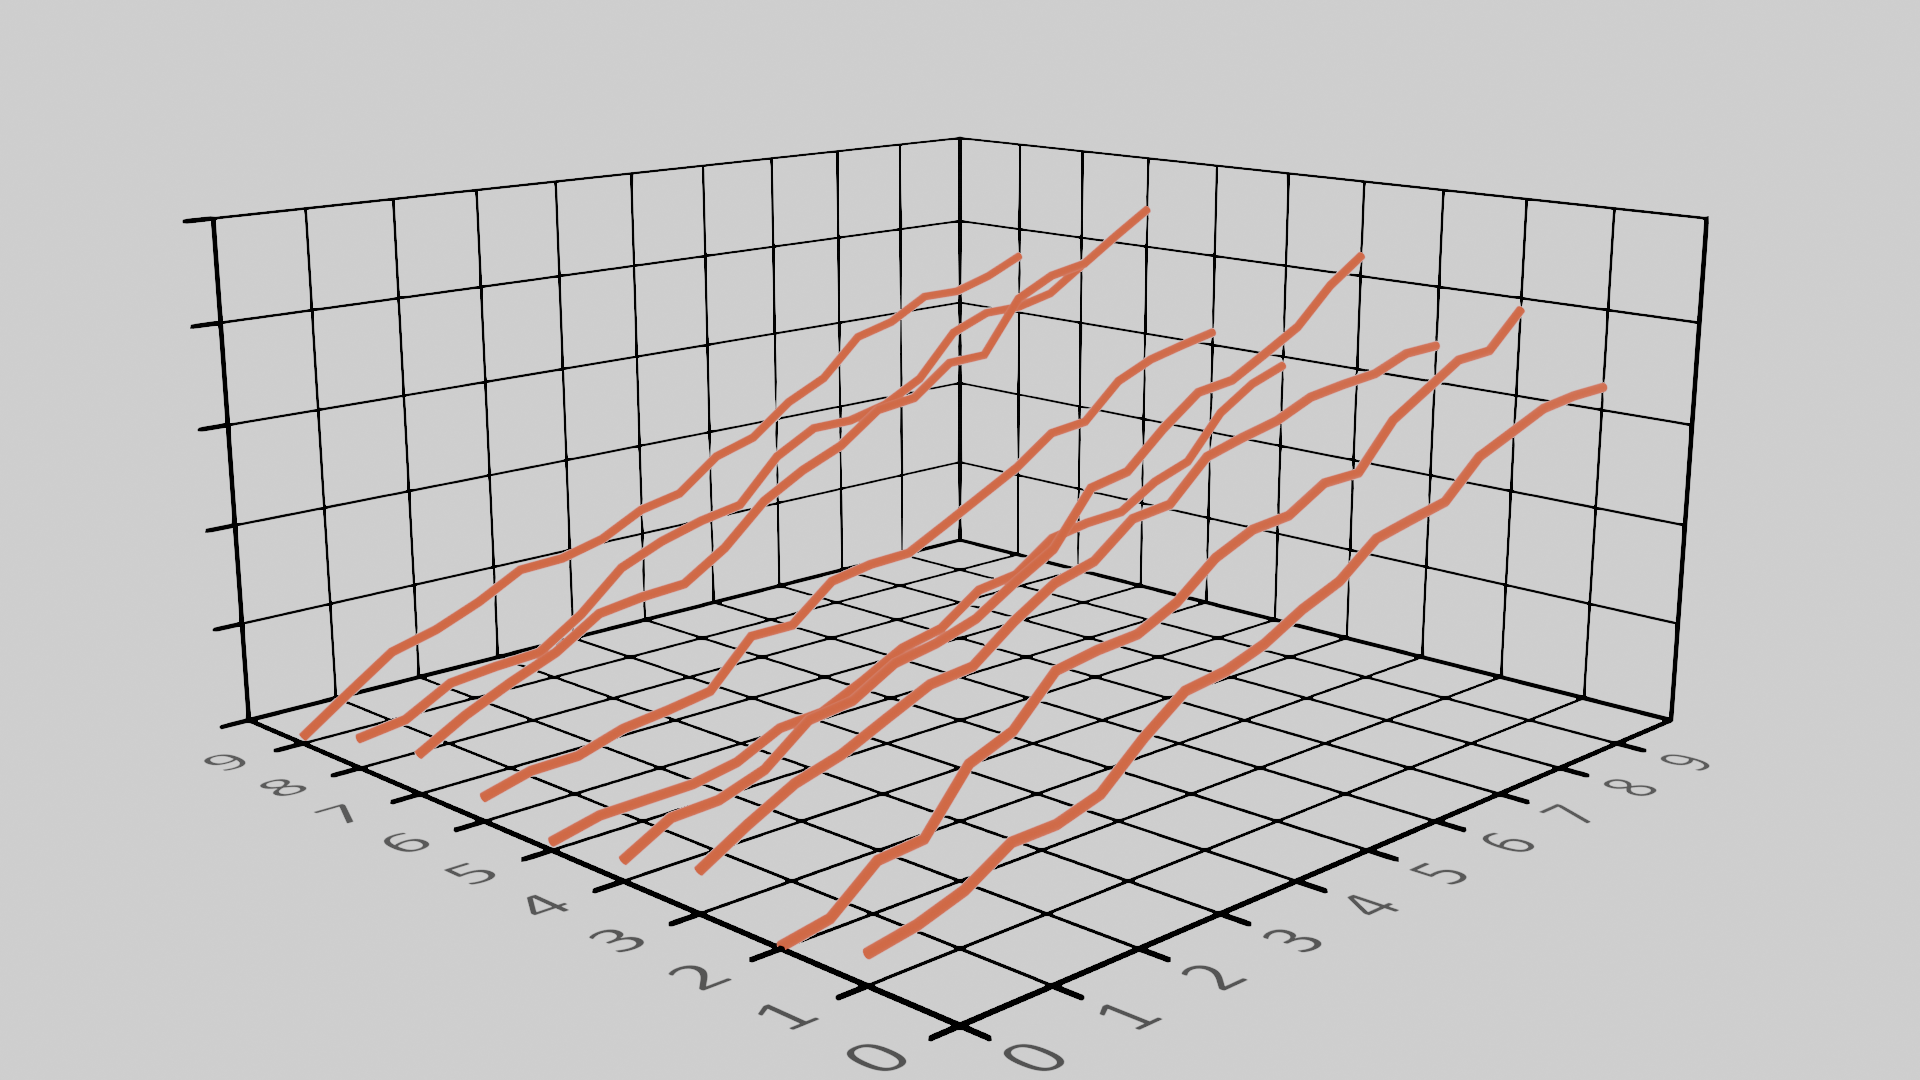 Example line plot